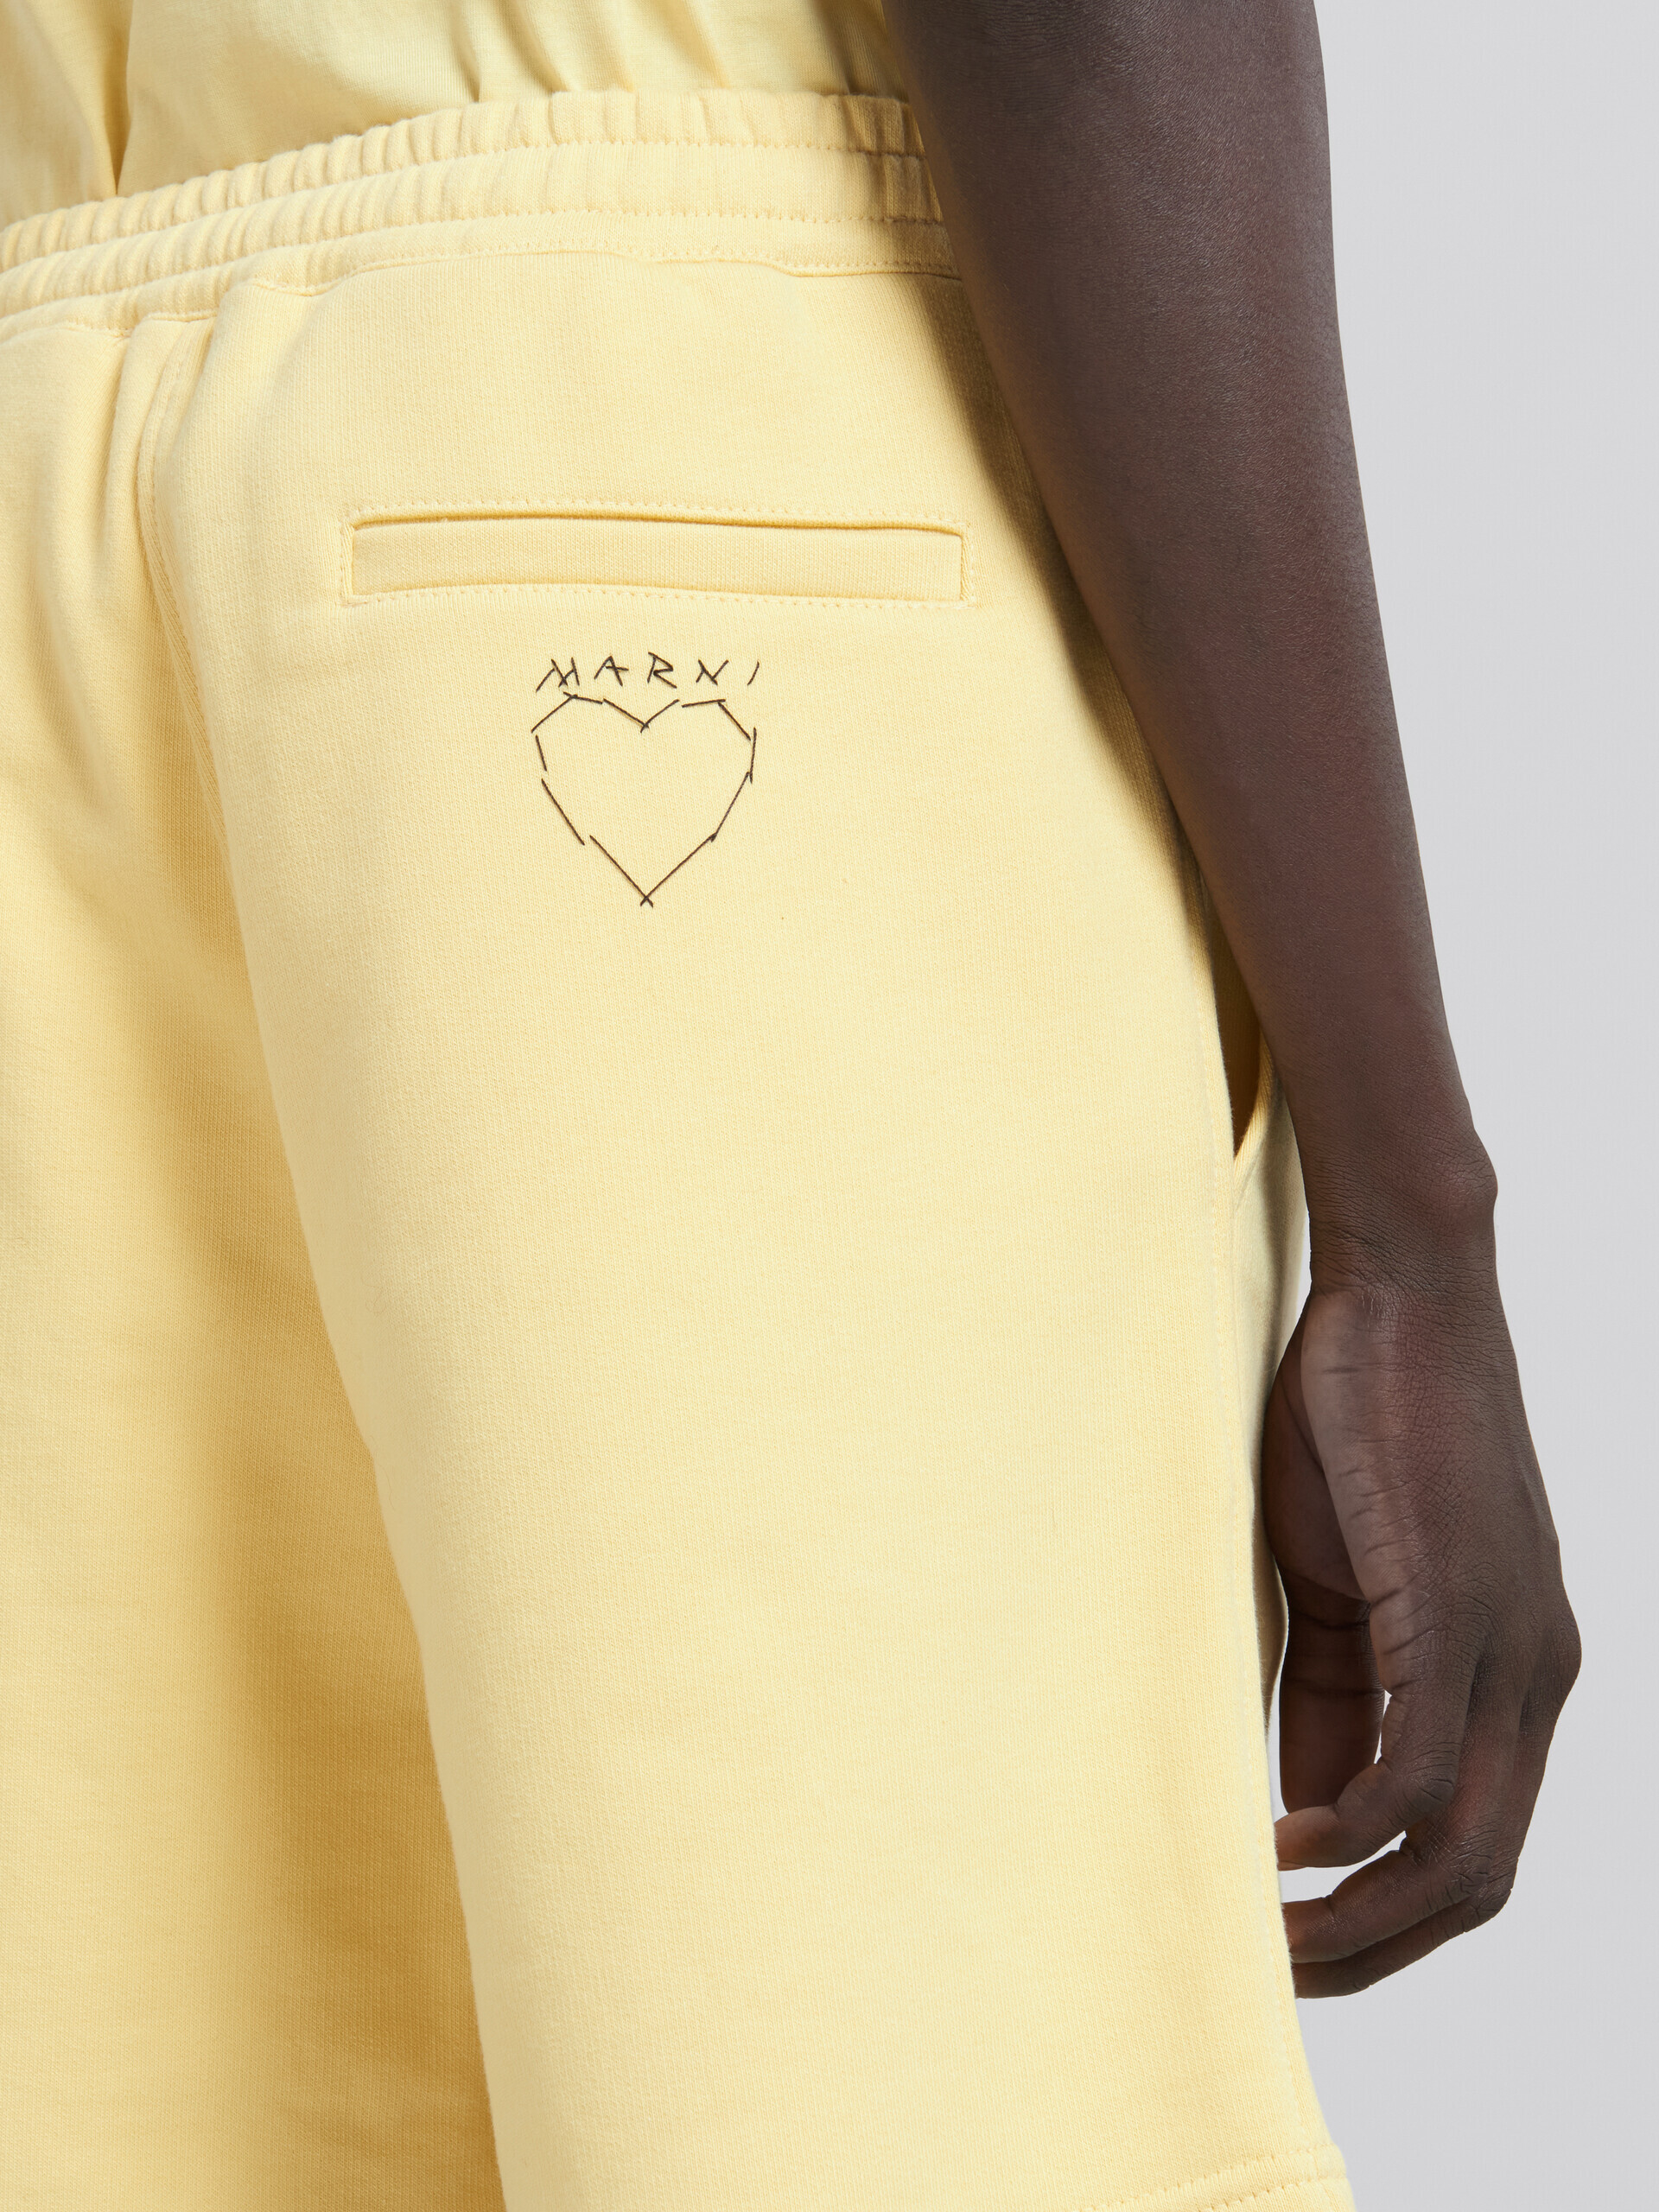 Gelbe Fleece-Shorts aus Bio-Baumwolle mit Marni-Stickerei - Hosen - Image 4